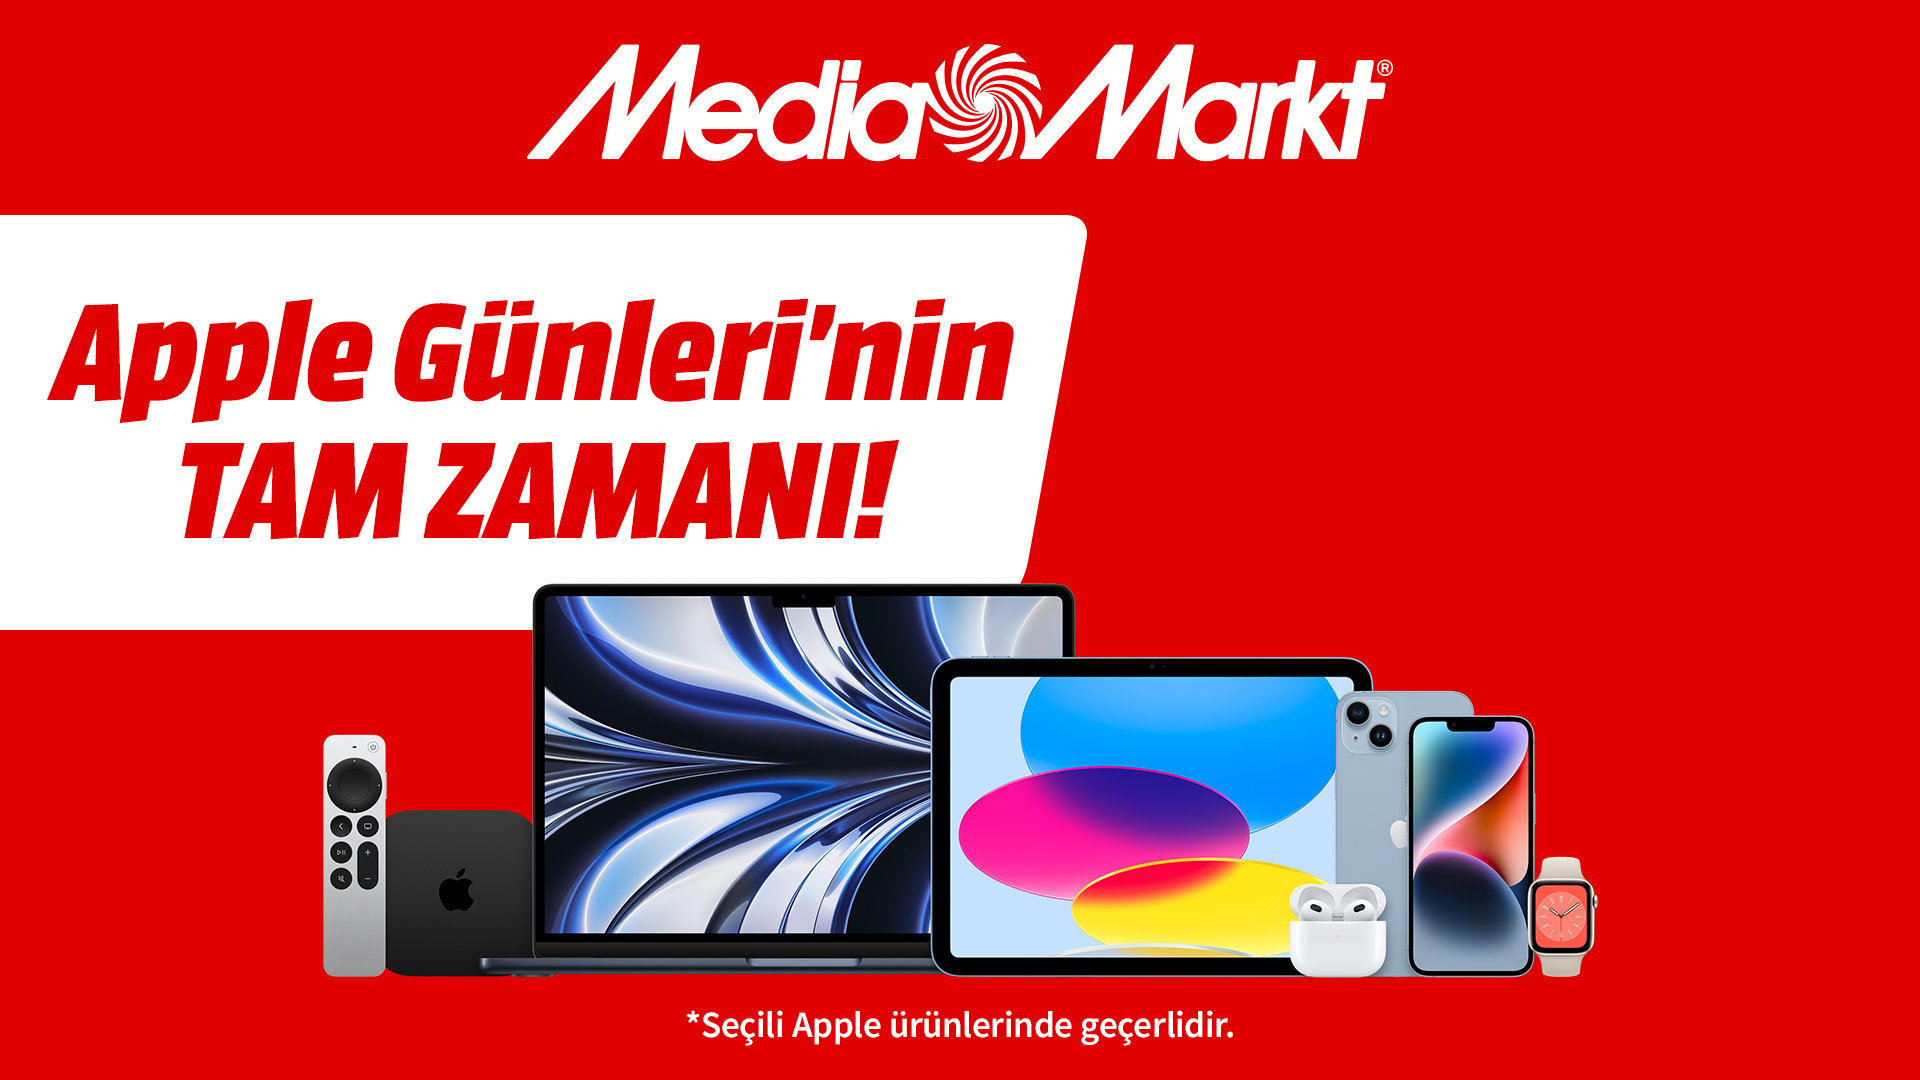 MediaMarkt Apple Günleri Kampanyası